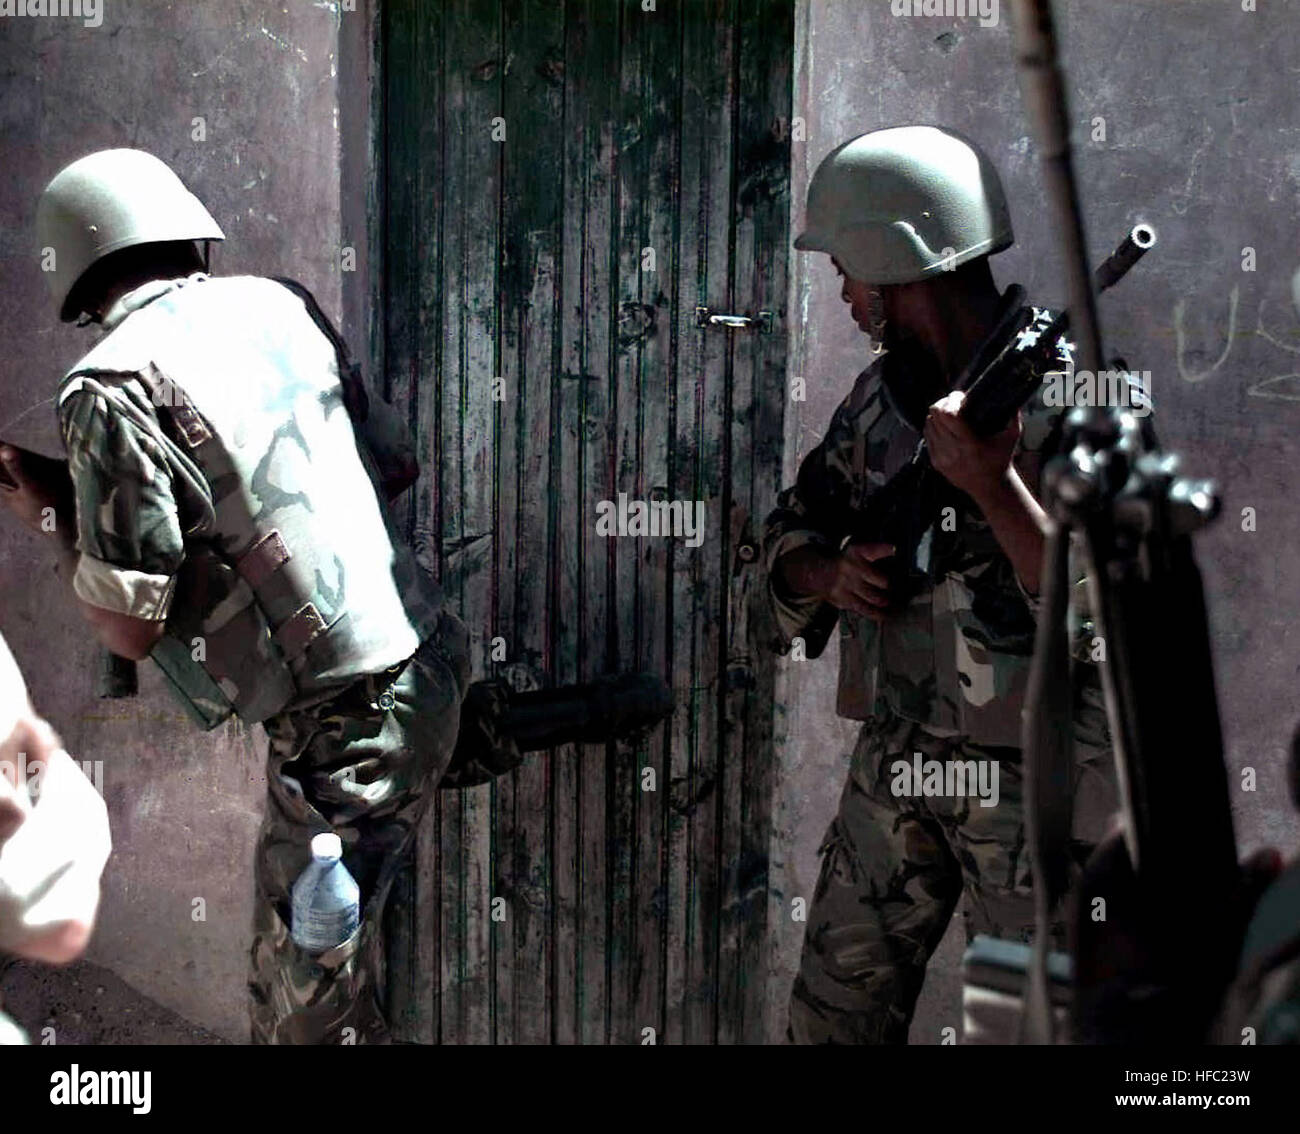 Zwei Mitglieder der Botswana Defense Force stehen in der Nähe einer Tür zu einem Gebäude.  Der Soldat auf der linken Seite beginnt an der Tür mit seinem rechten Bein.  Die Tür ist Teil eines Gebäudes auf dem Bakara-Markt in Mogadischu, Somalia.  Die Soldaten suchen nach Waffen bei einer Razzia auf dem Markt mit US-Marines (nicht dargestellt).  Diese Mission ist zur direkten Unterstützung der Operation Restore Hope. 2 BDF Soldaten auf Raid in Bakara-Markt 1993-01-30 Stockfoto